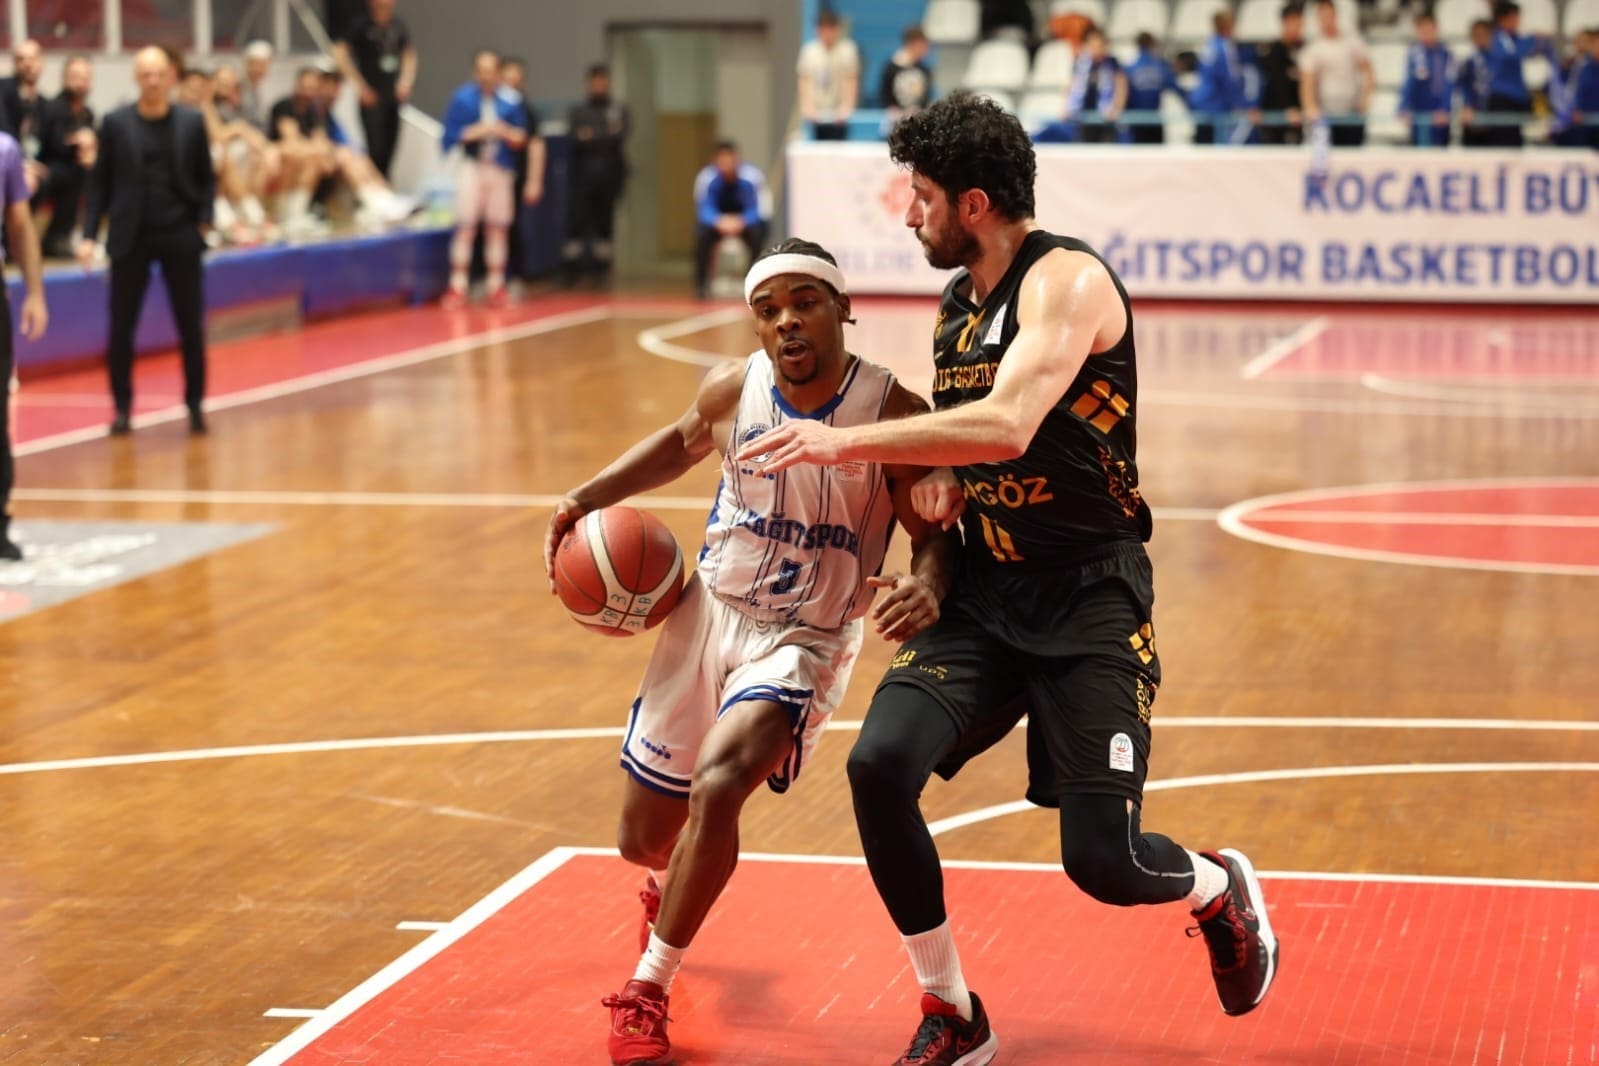 turkiye basketbol ligi kocaeli bsb kagitspor 83 igdir basketbol 68 0 Nl2gDZPX